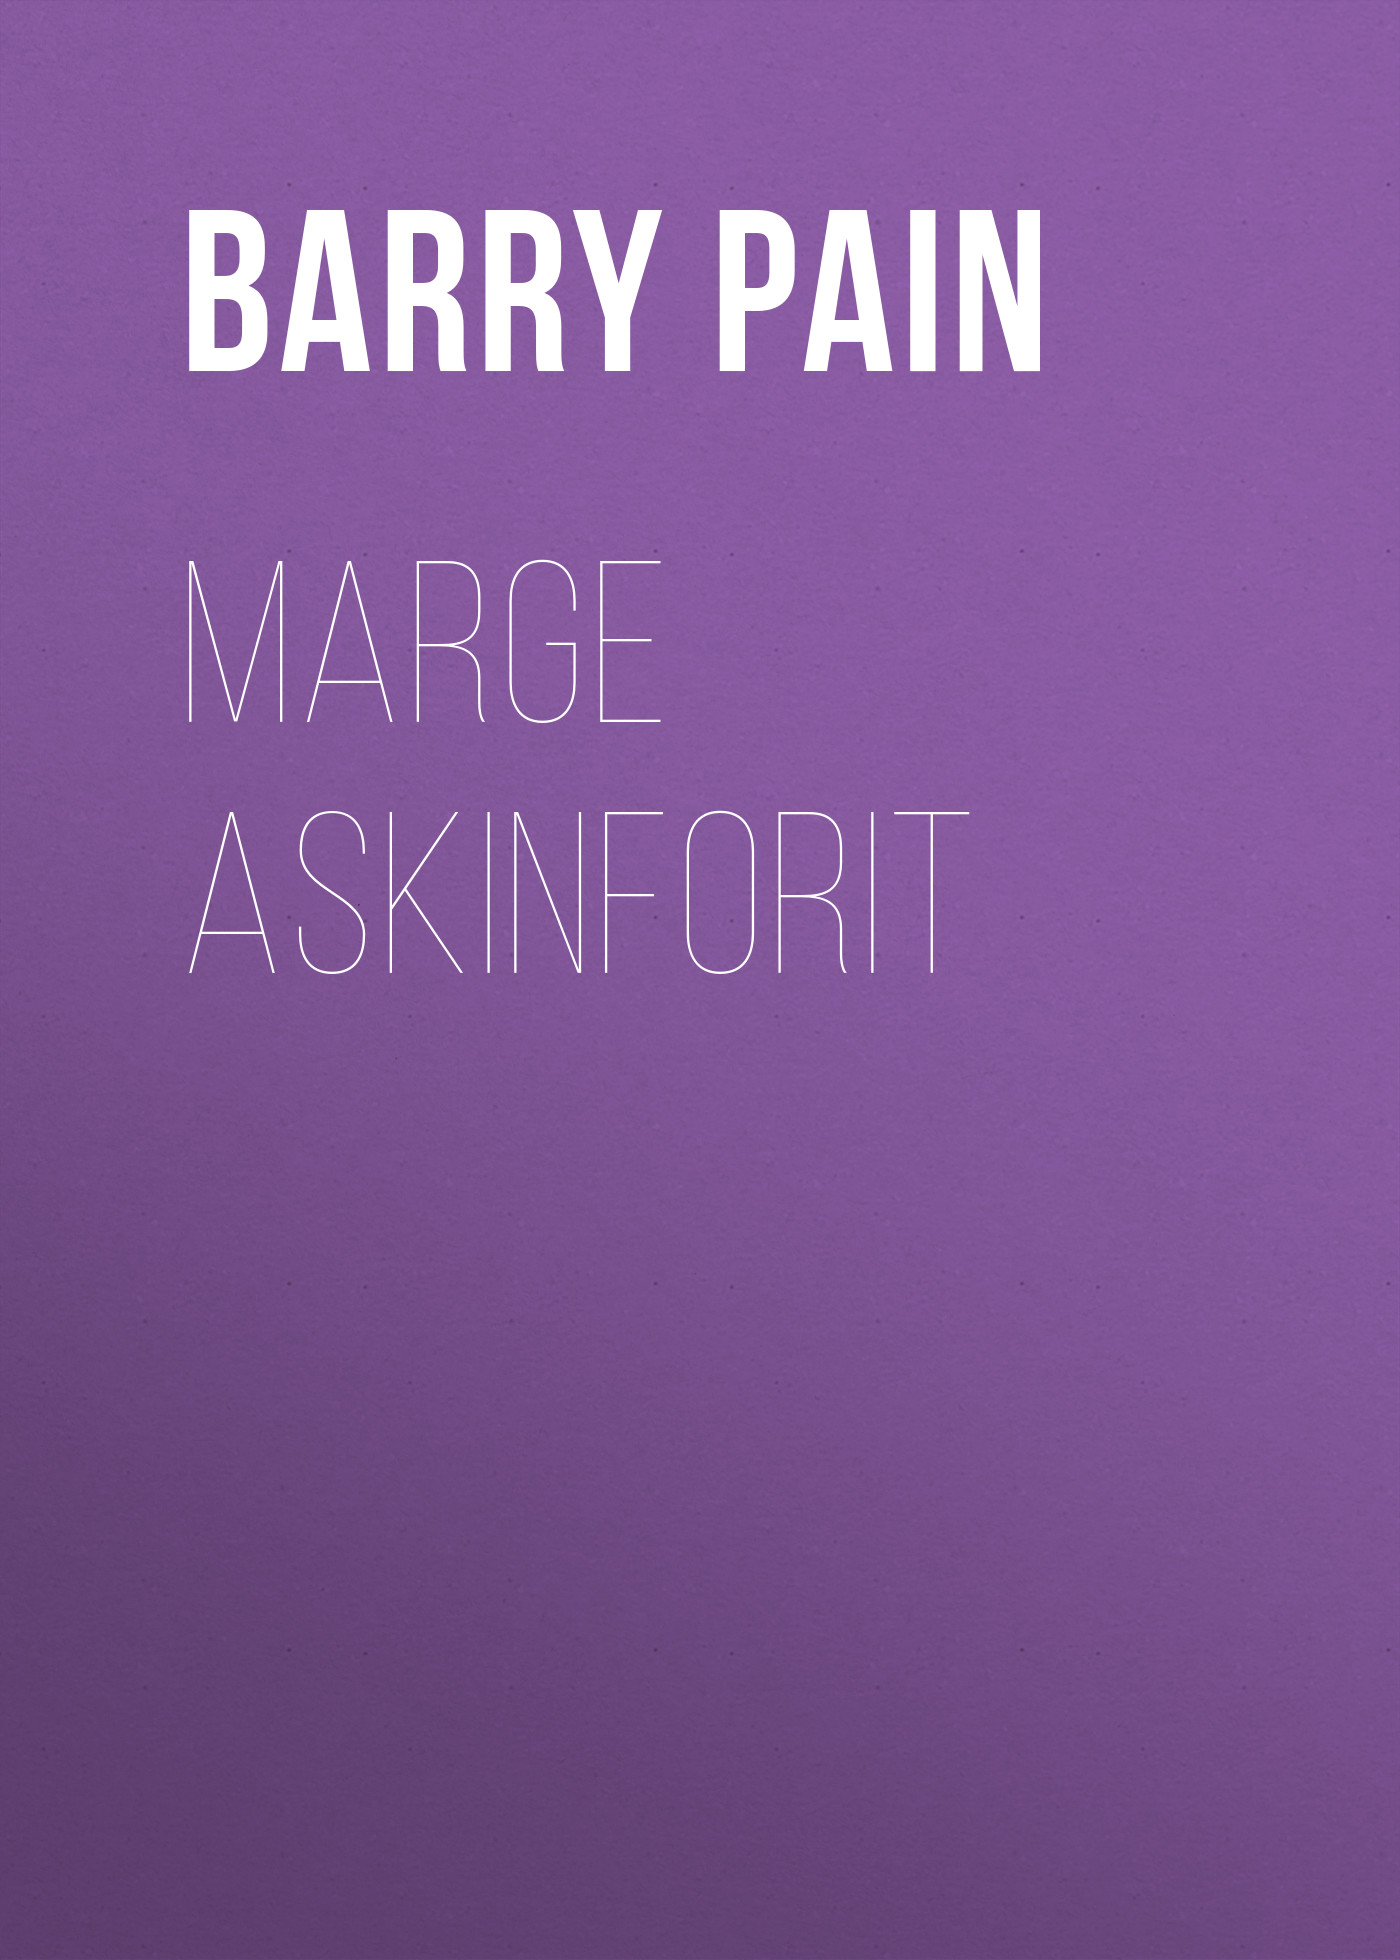 Книга Marge Askinforit из серии , созданная Barry Pain, может относится к жанру Зарубежная классика, Зарубежная старинная литература. Стоимость электронной книги Marge Askinforit с идентификатором 41260844 составляет 0 руб.